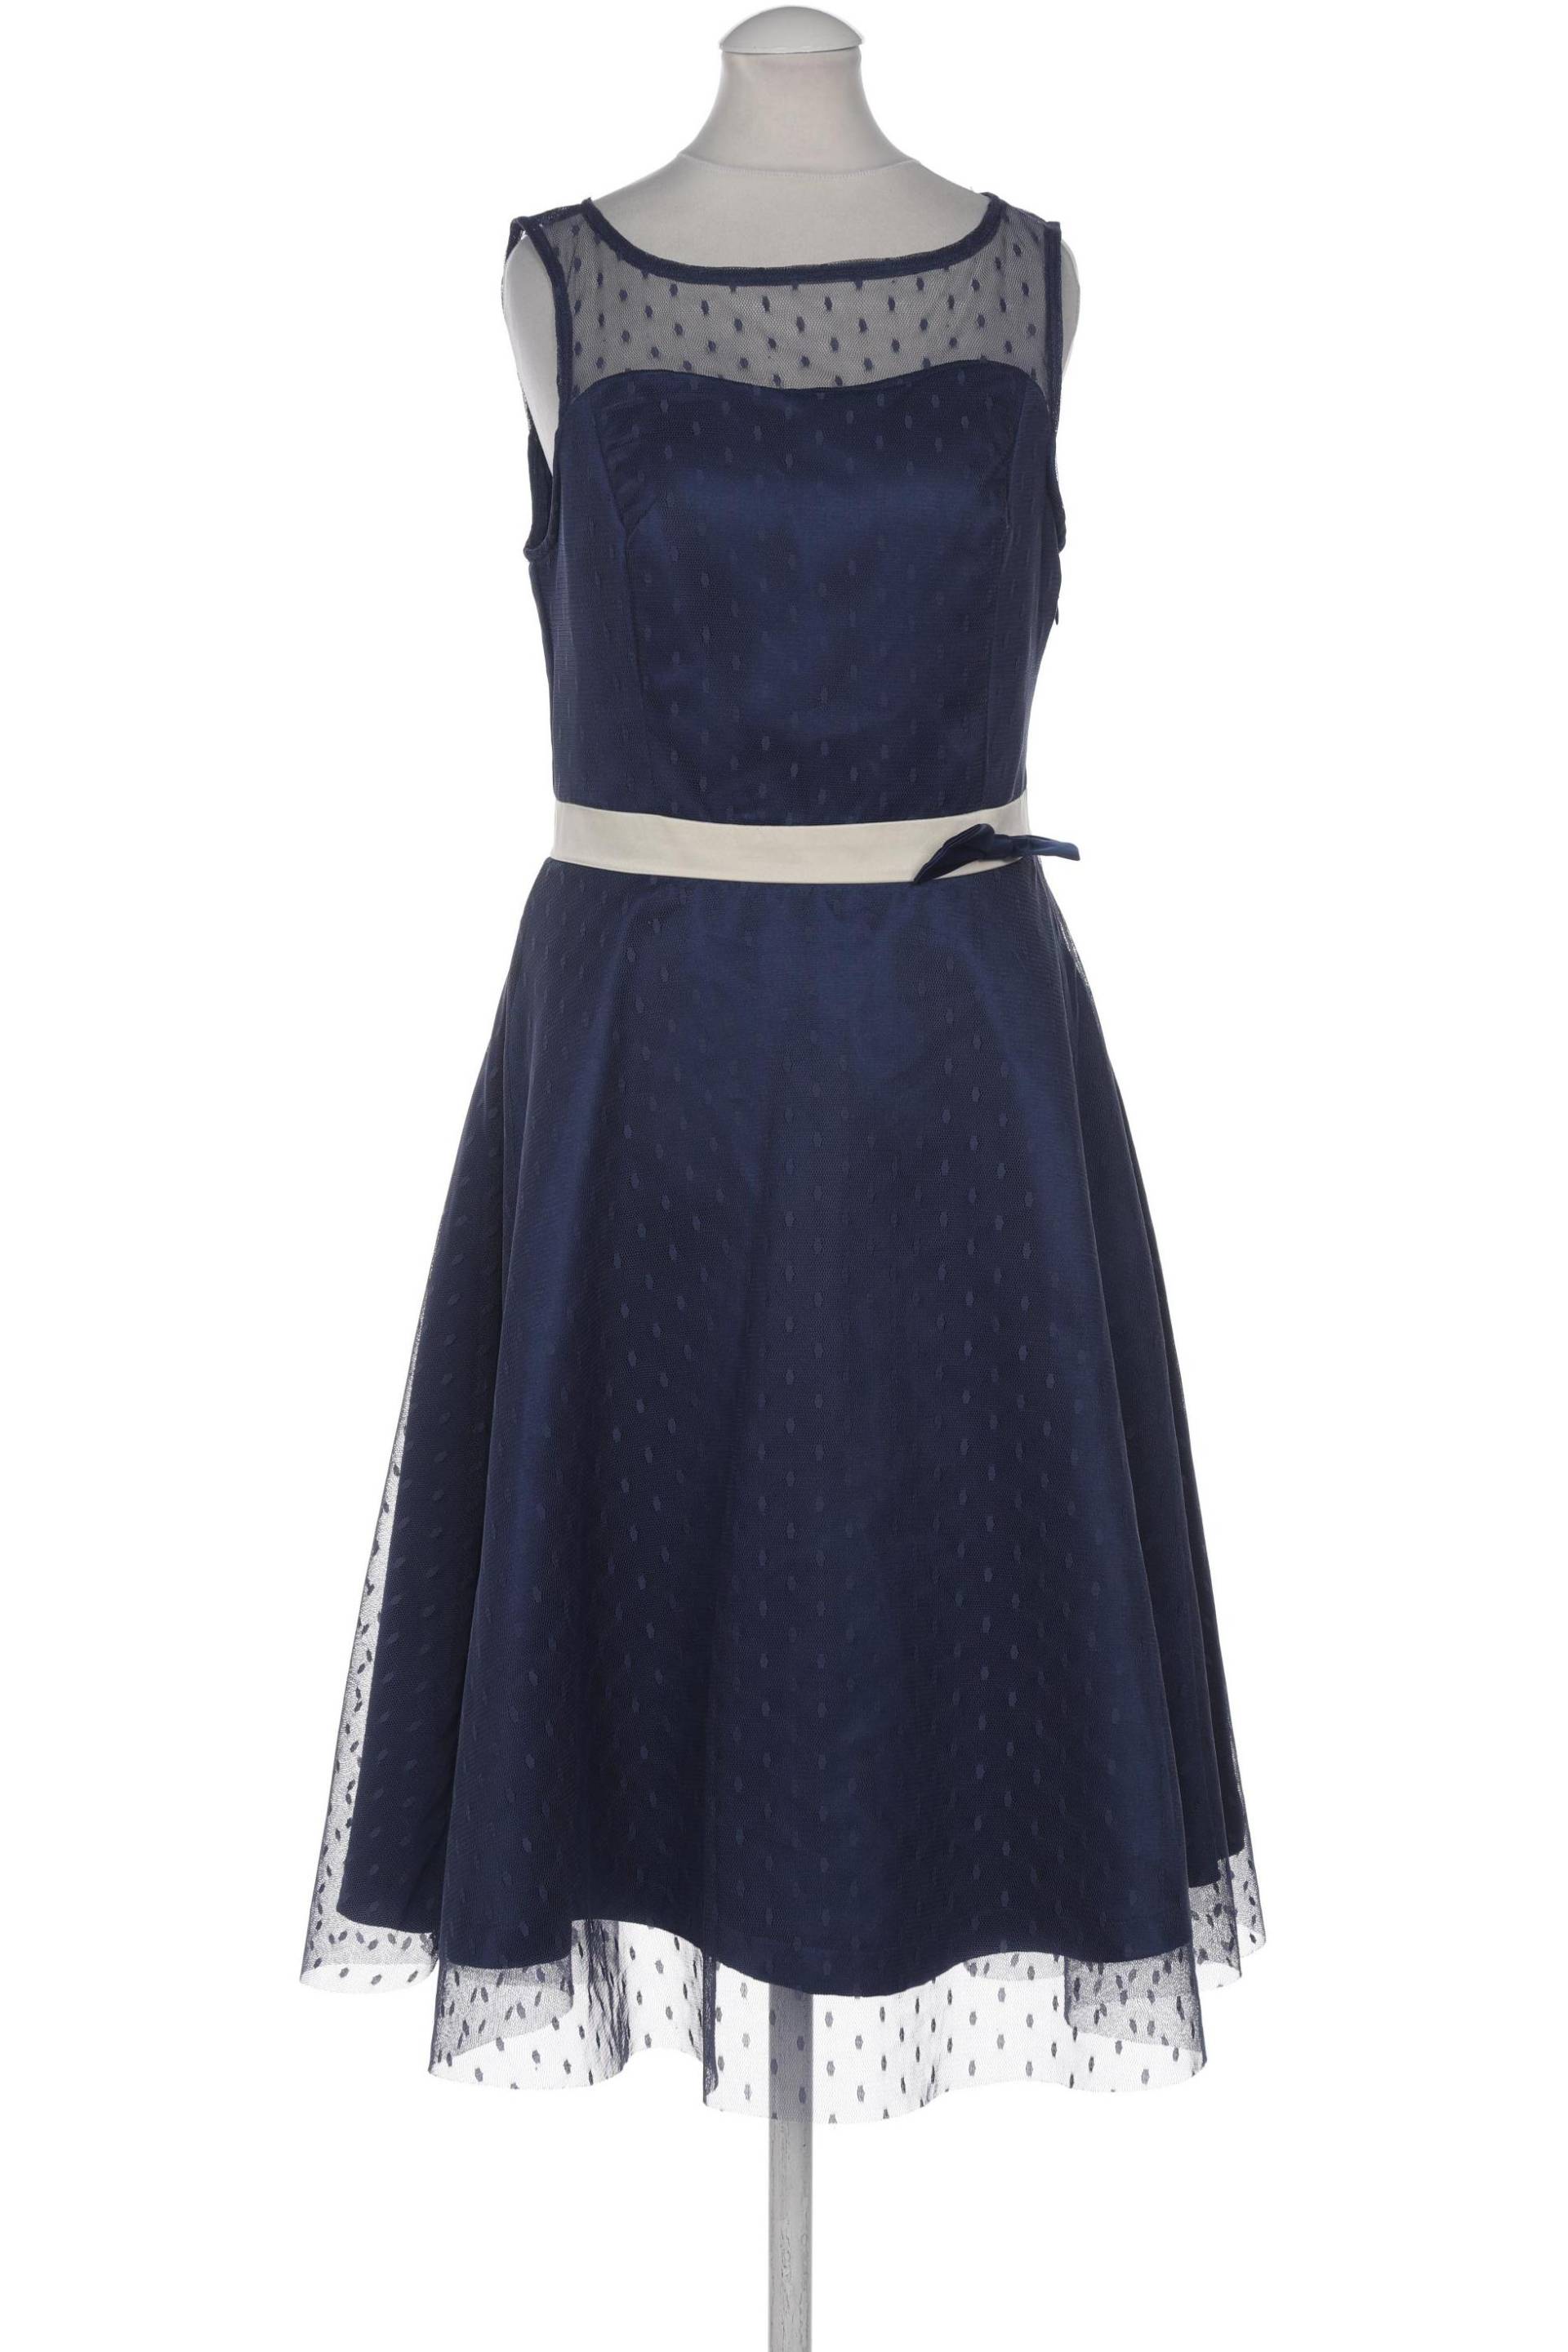 Lindy Bop Damen Kleid, marineblau, Gr. 36 von lindy bop